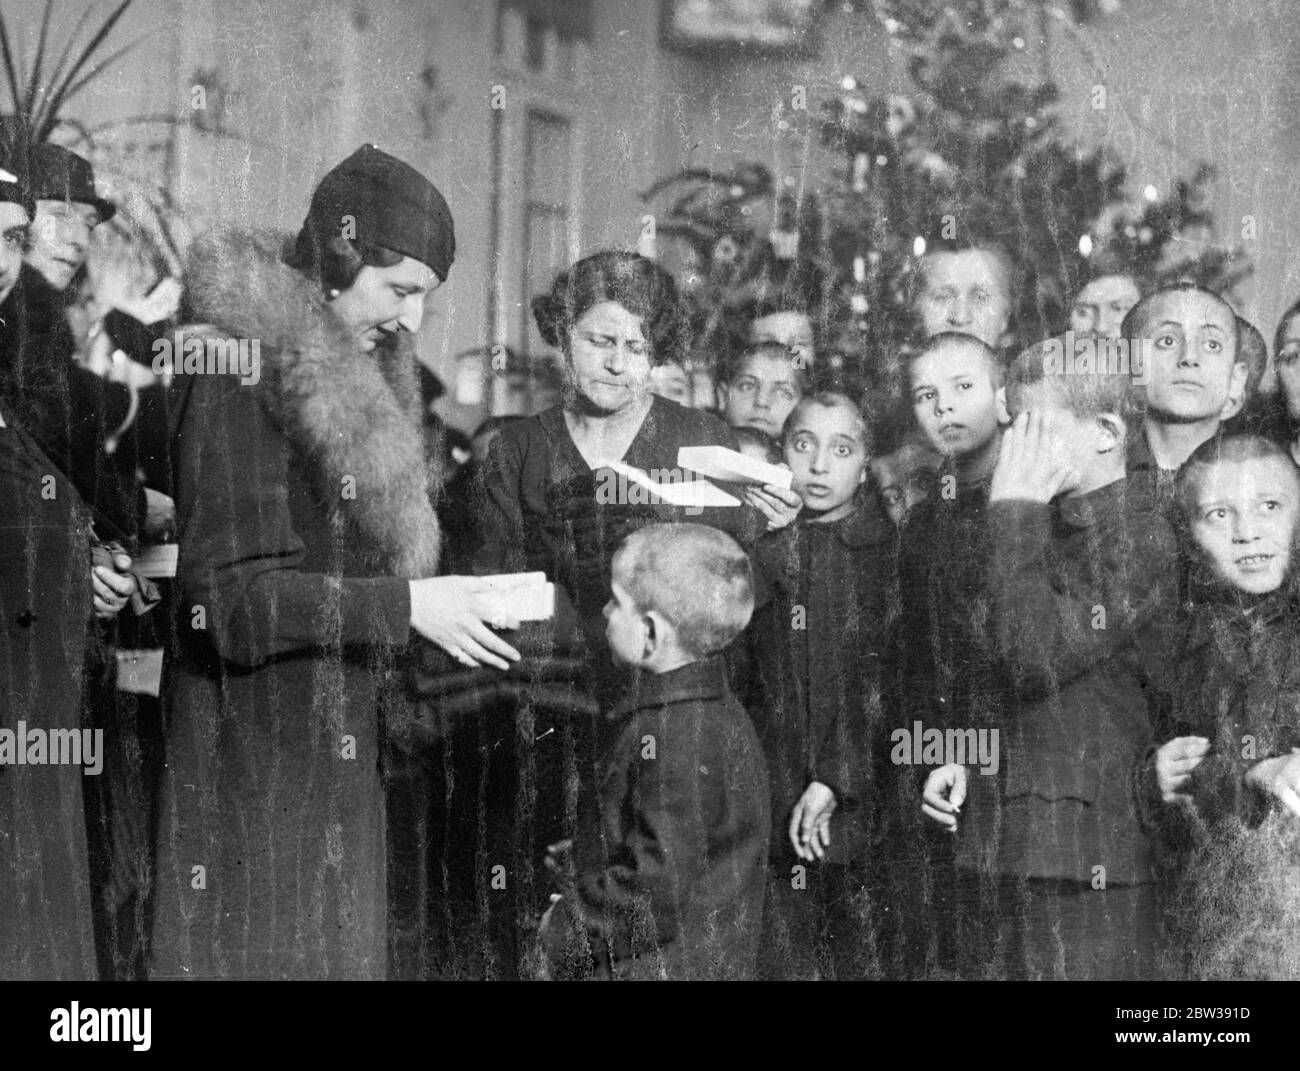 La Reine de Bulgarie présente des cadeaux aux enfants . La Reine de Bulgarie a visité une auberge de jeunesse et une crèche à Sofia et a distribué des cadeaux aux enfants . Photos ; Reine de Bulgarie distribuant des cadeaux aux enfants pendant sa visite . 15 janvier 1934 30, 30, 30, 30, 30, 30, 30, 30, 30, 30 Banque D'Images